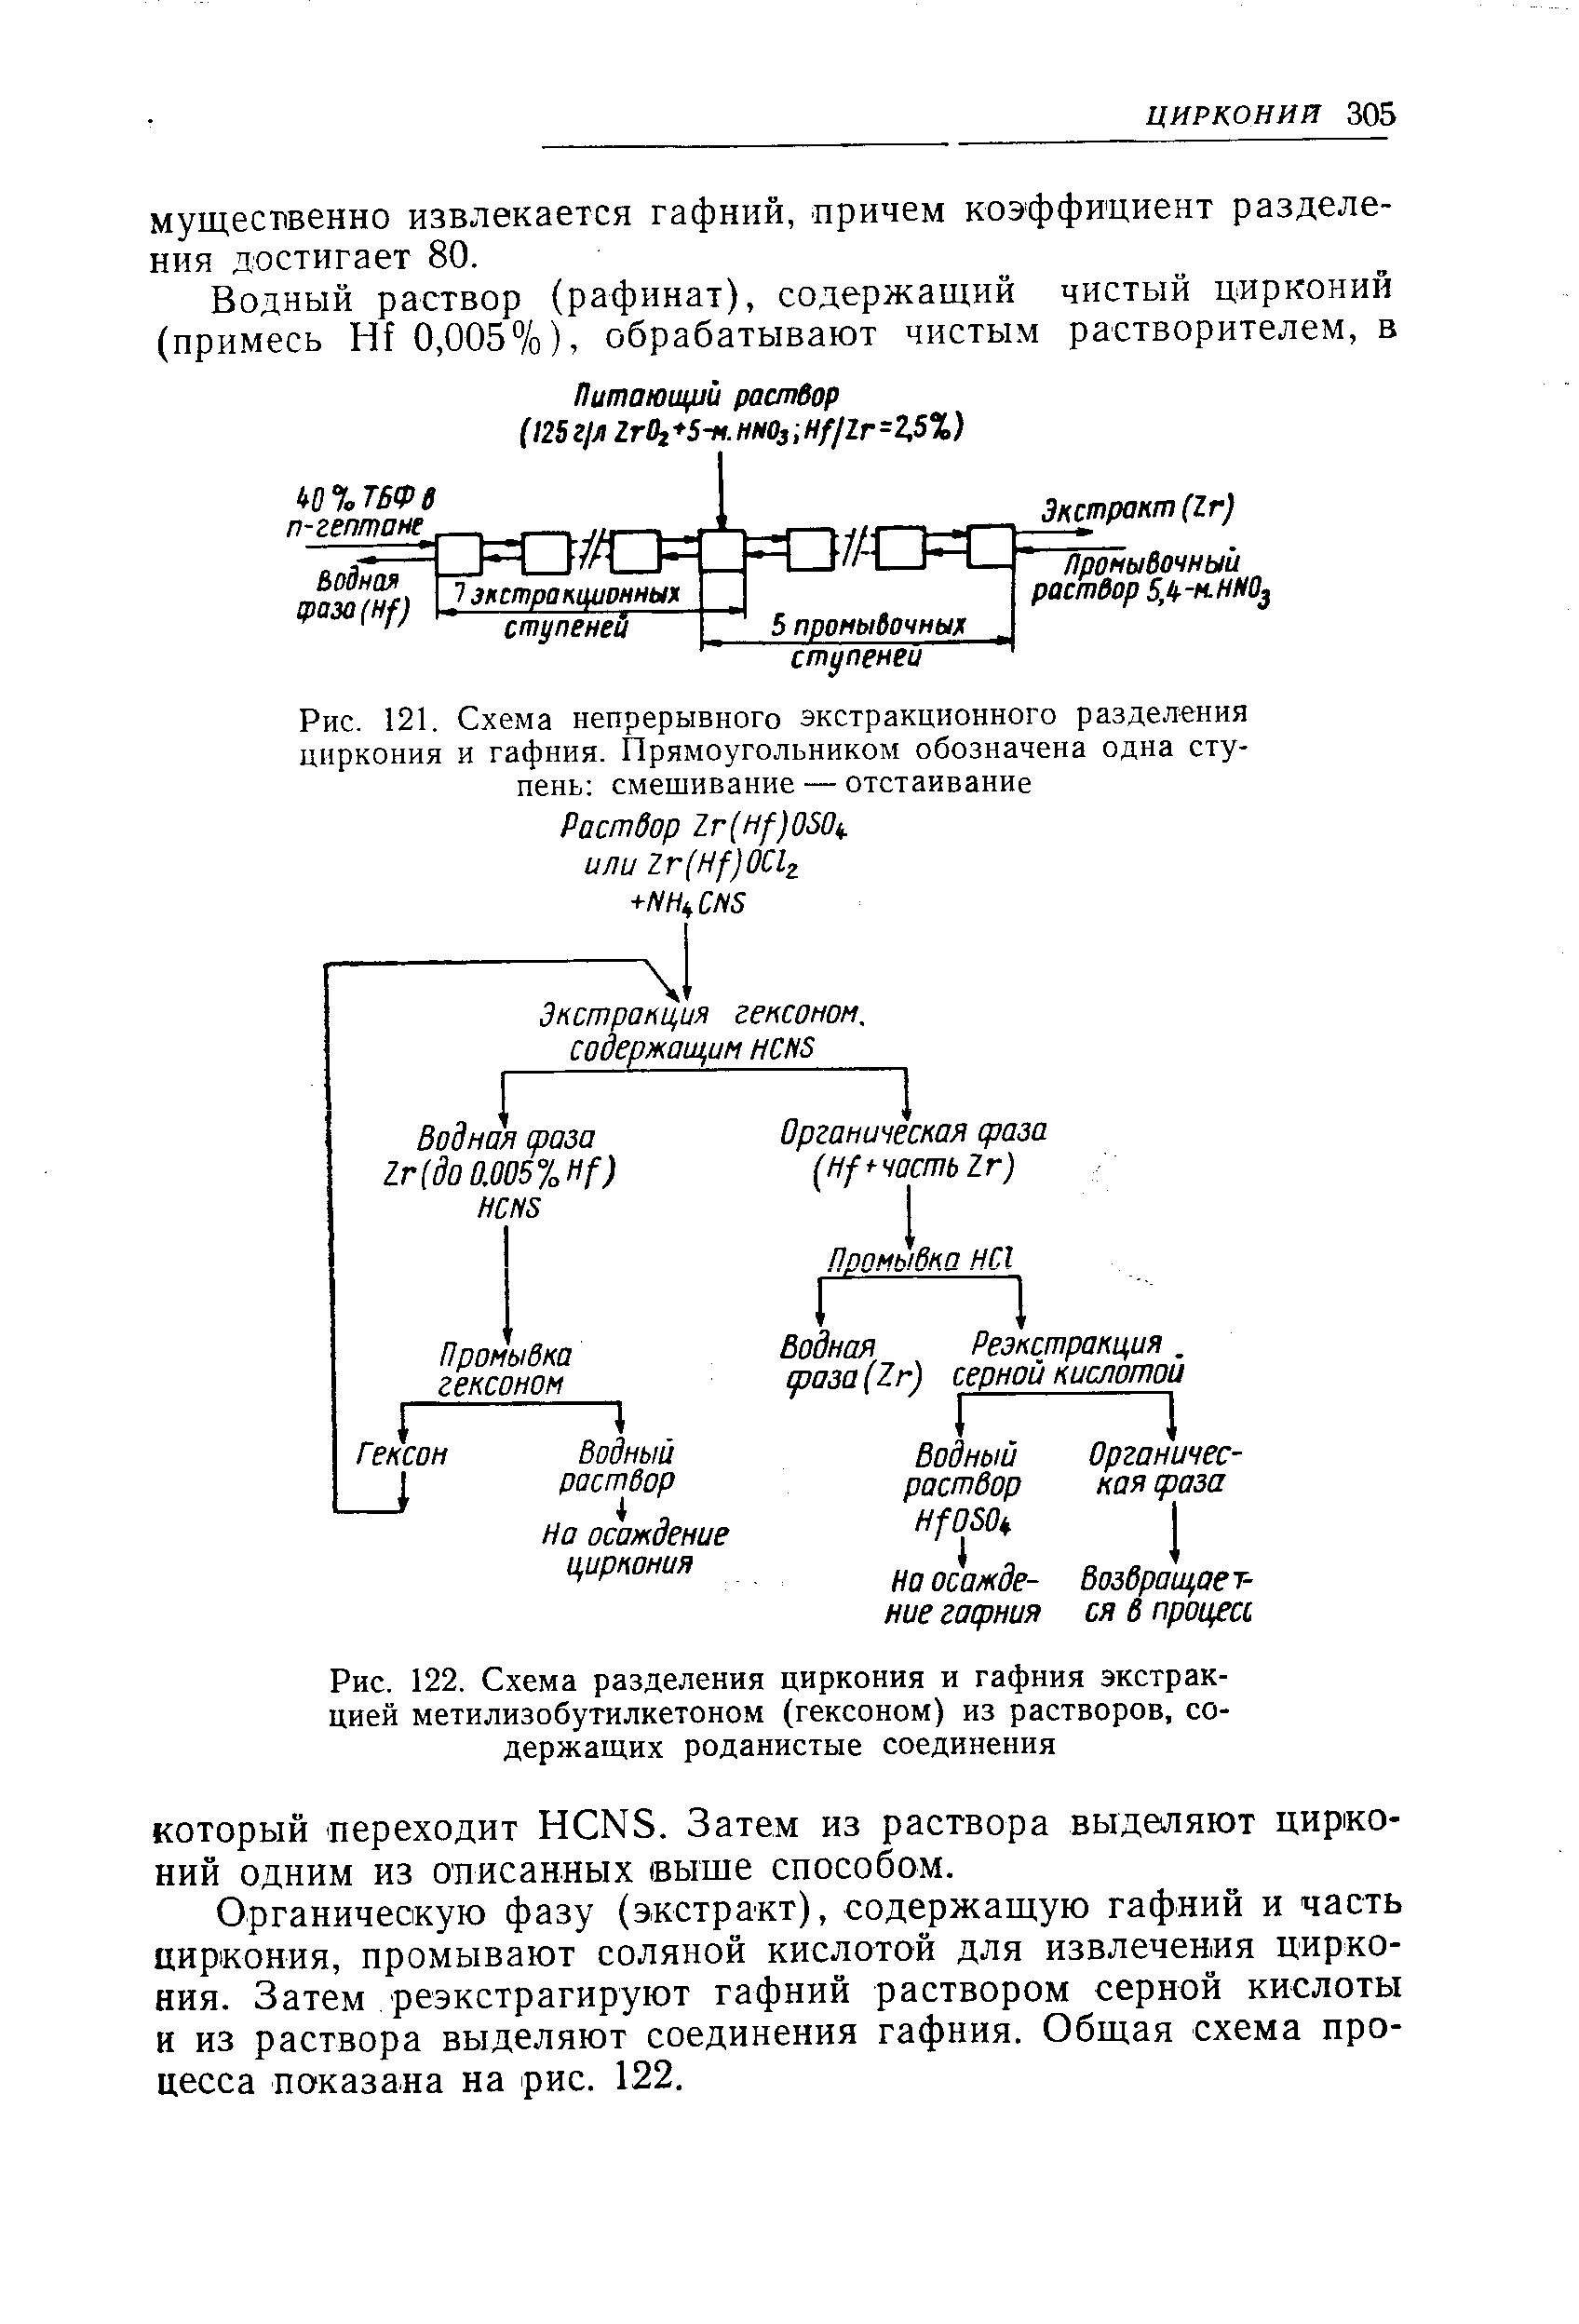 Рис. 122, Схема разделения циркония и гафния экстракцией метилизобутилкетоном (гексоном) из растворов, содержащих роданистые соединения
